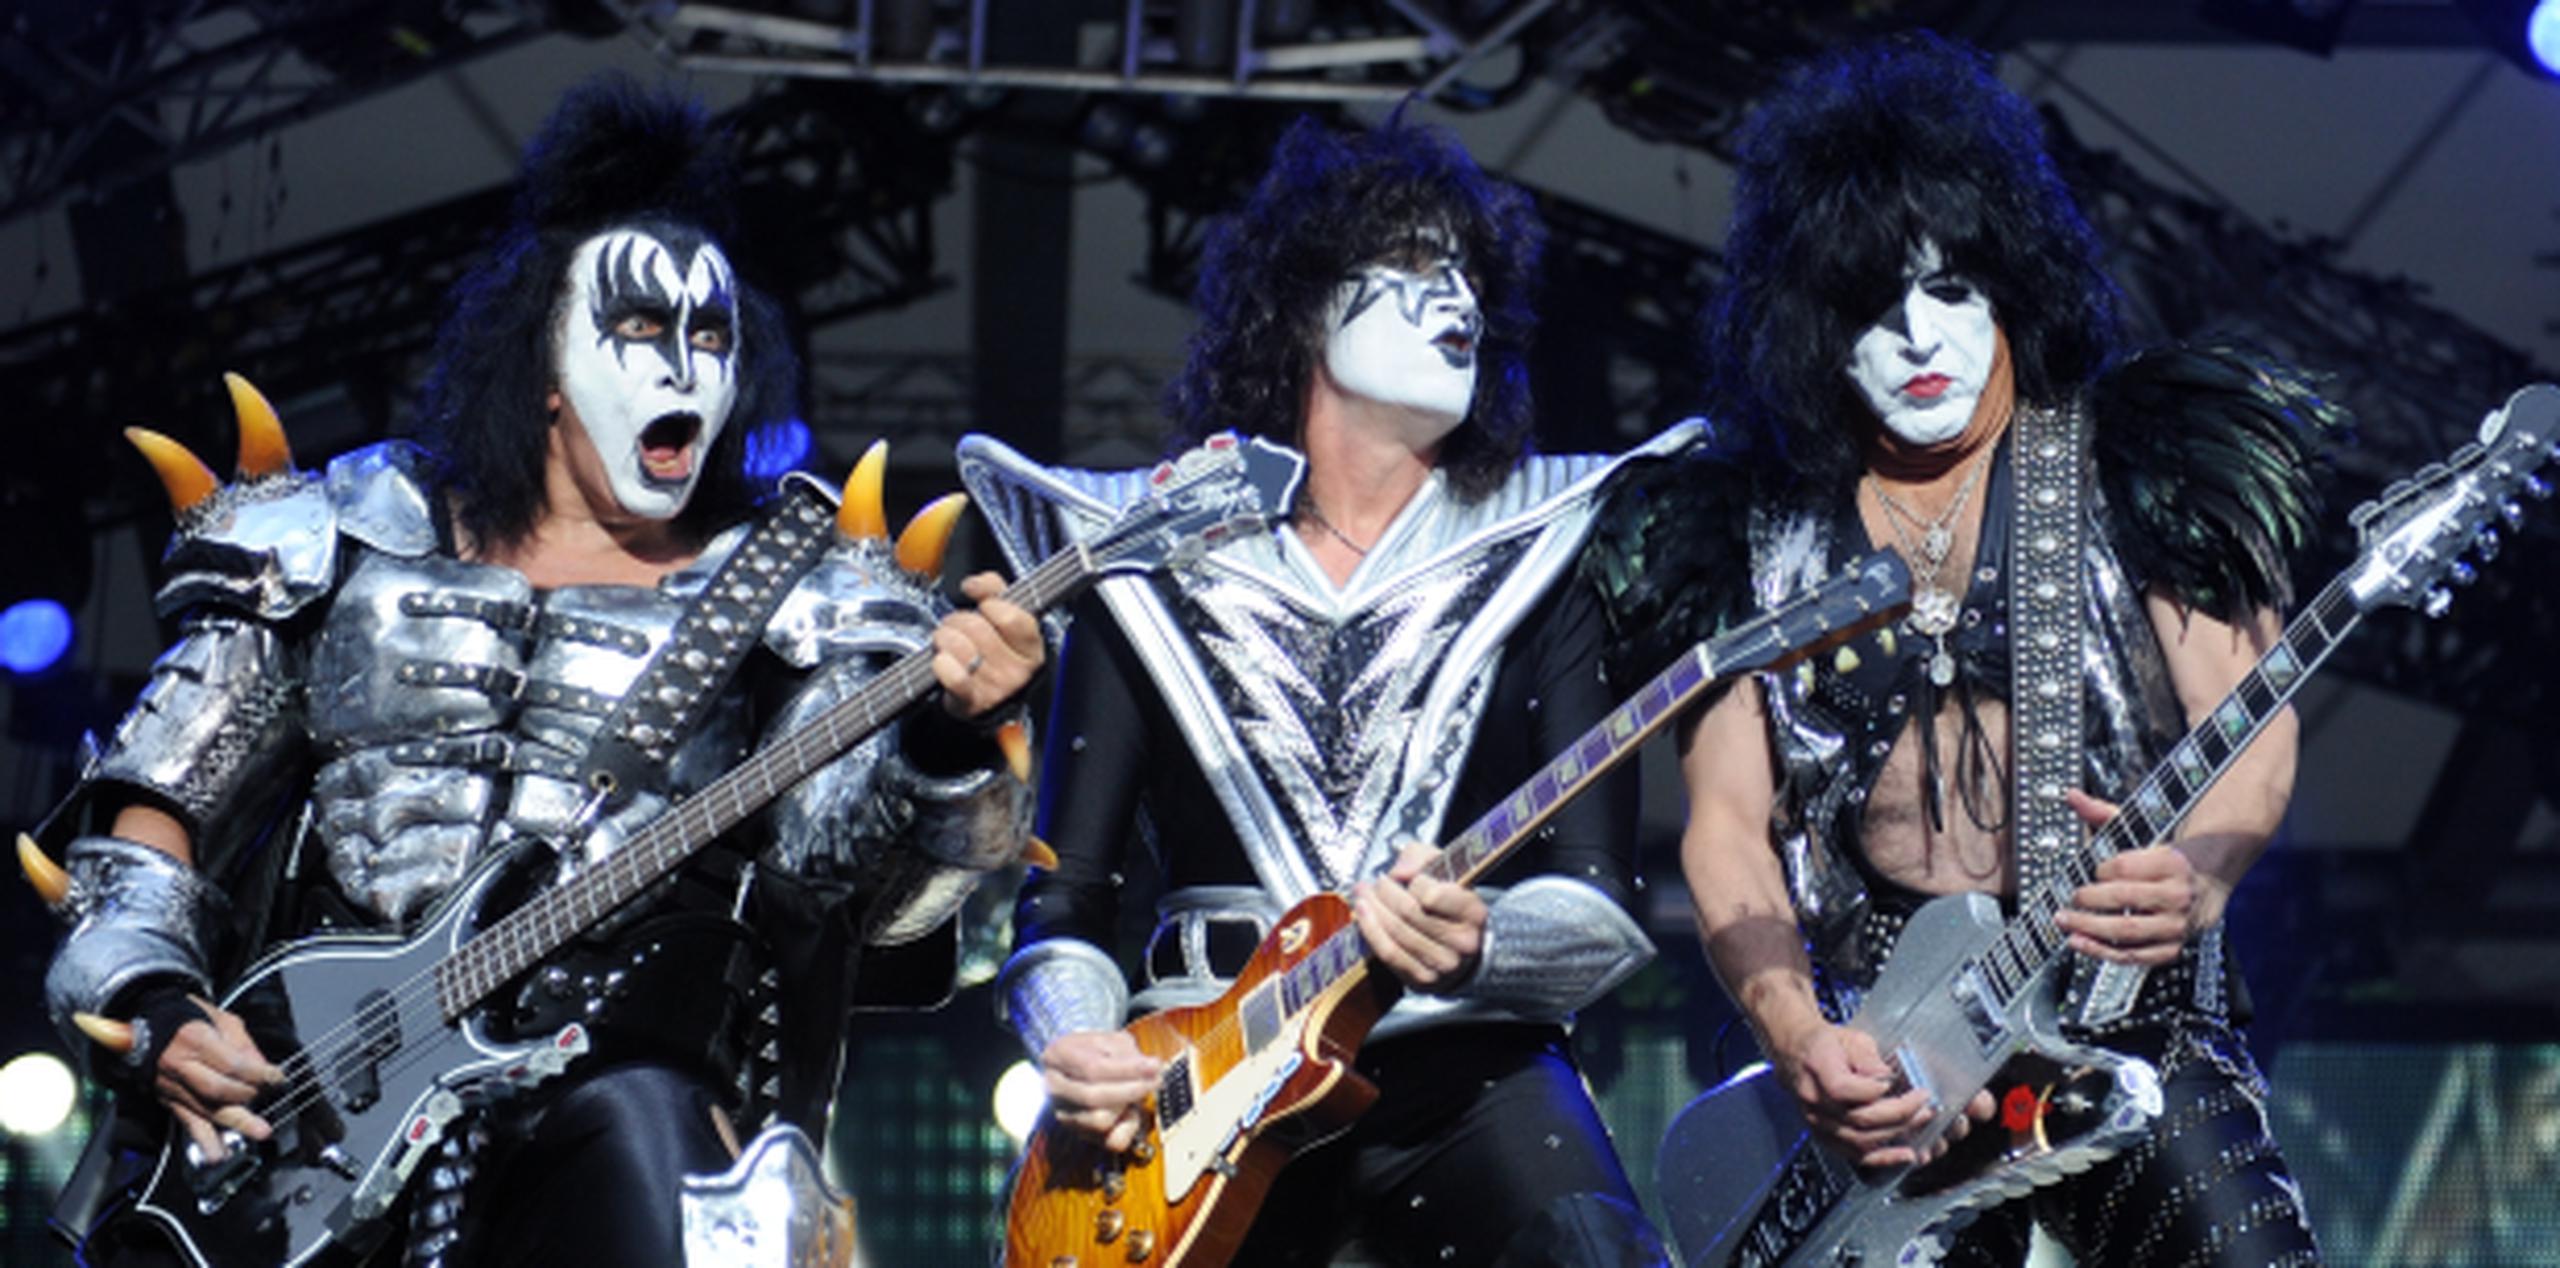 Kiss comenzó en 1973 y el grupo original tocó hasta 1980. Se volvieron a reunir entre 1996 y 2000, pero la banda ha continuado tocando con nuevos integrantes que se disfrazan de Frehley y Criss. (AP)